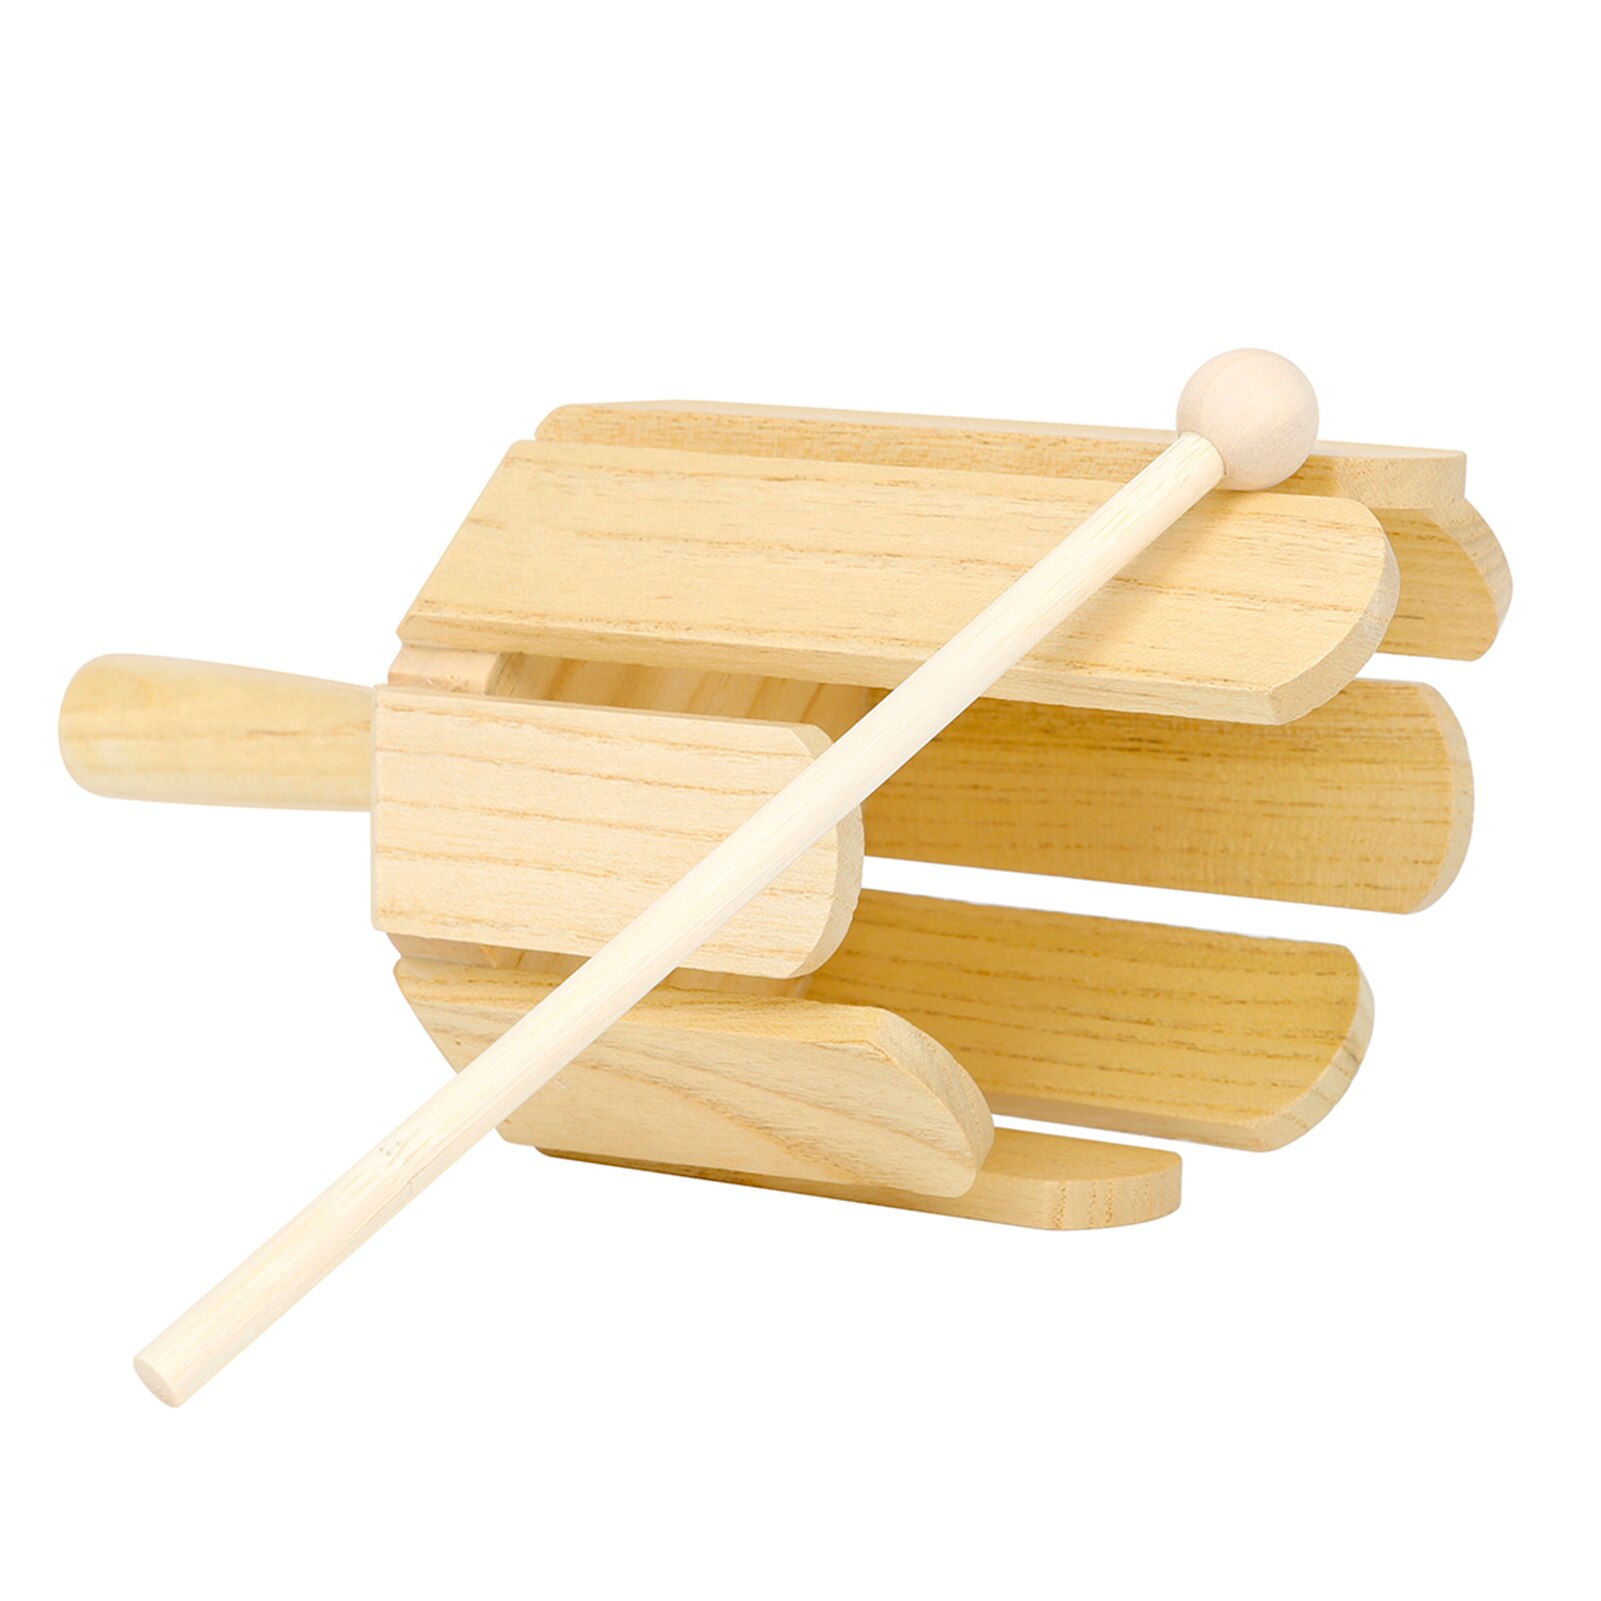 8- tone træ lyd maker musikinstrument med pind til småbørn børn tidlige musikuddannelse musik legetøj